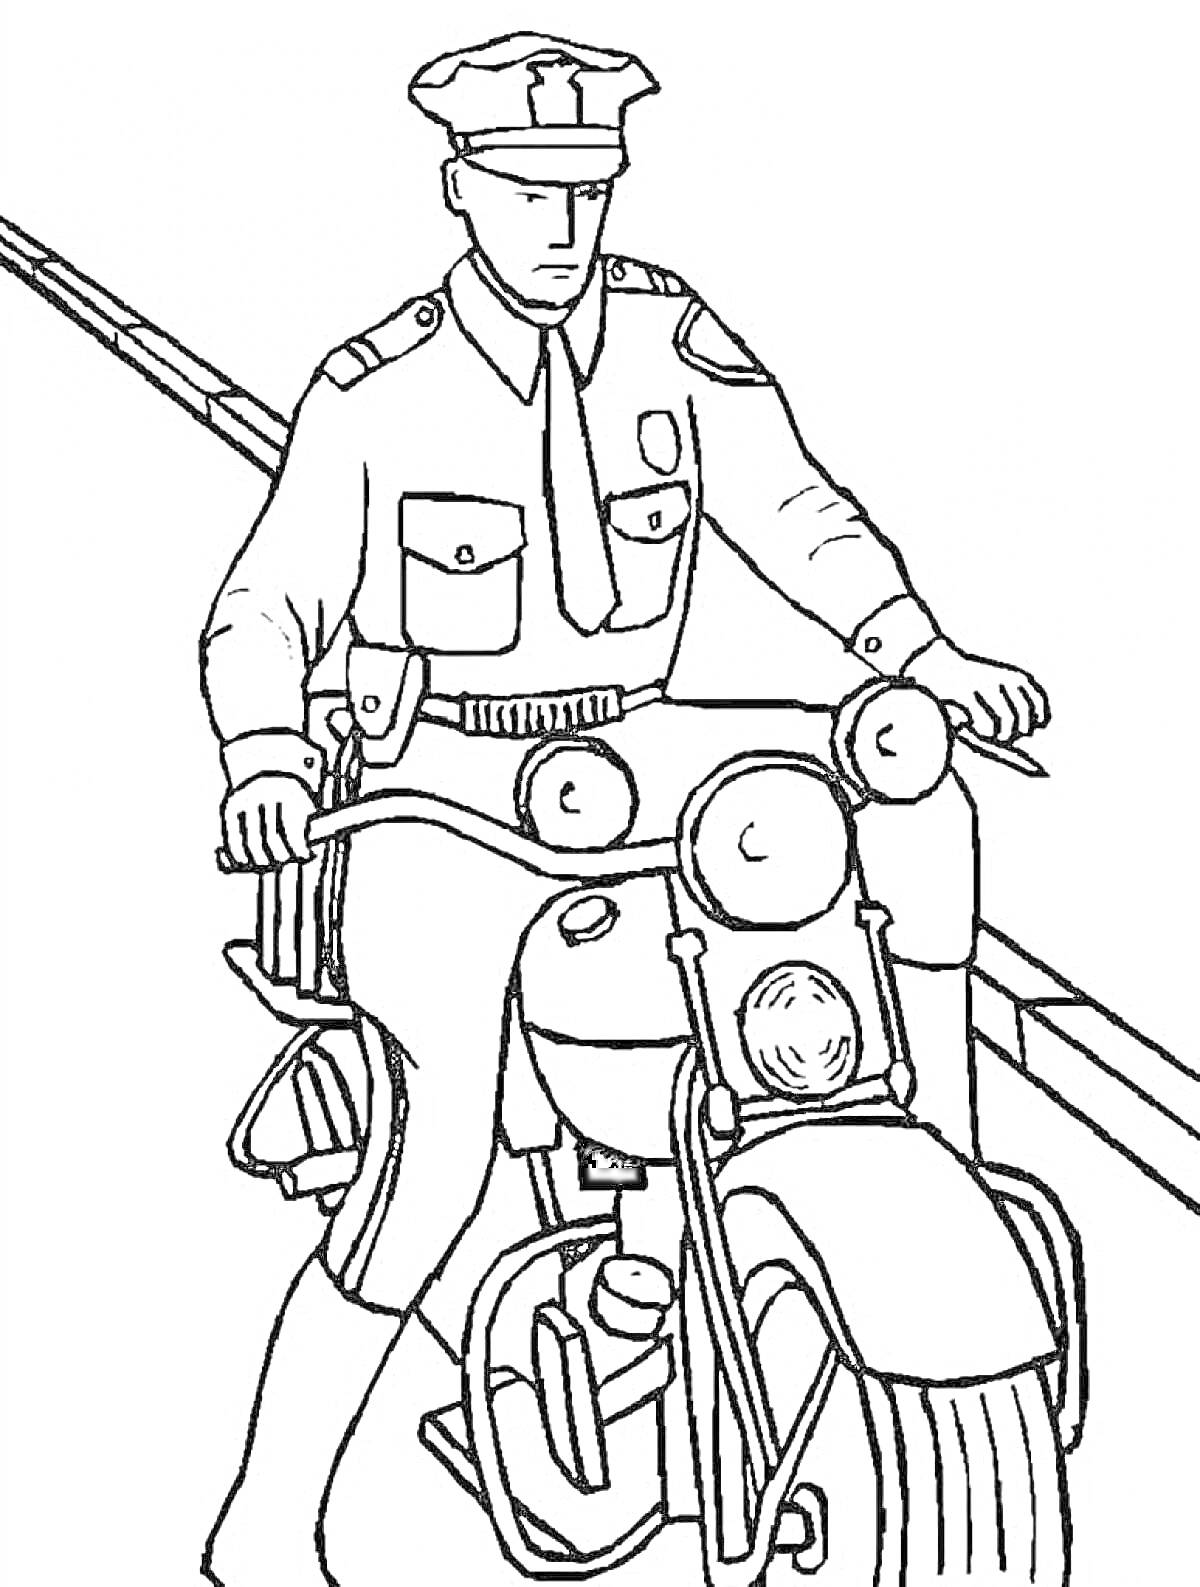 Раскраска Полицейский на мотоцикле с двумя фарами, едущий по дороге